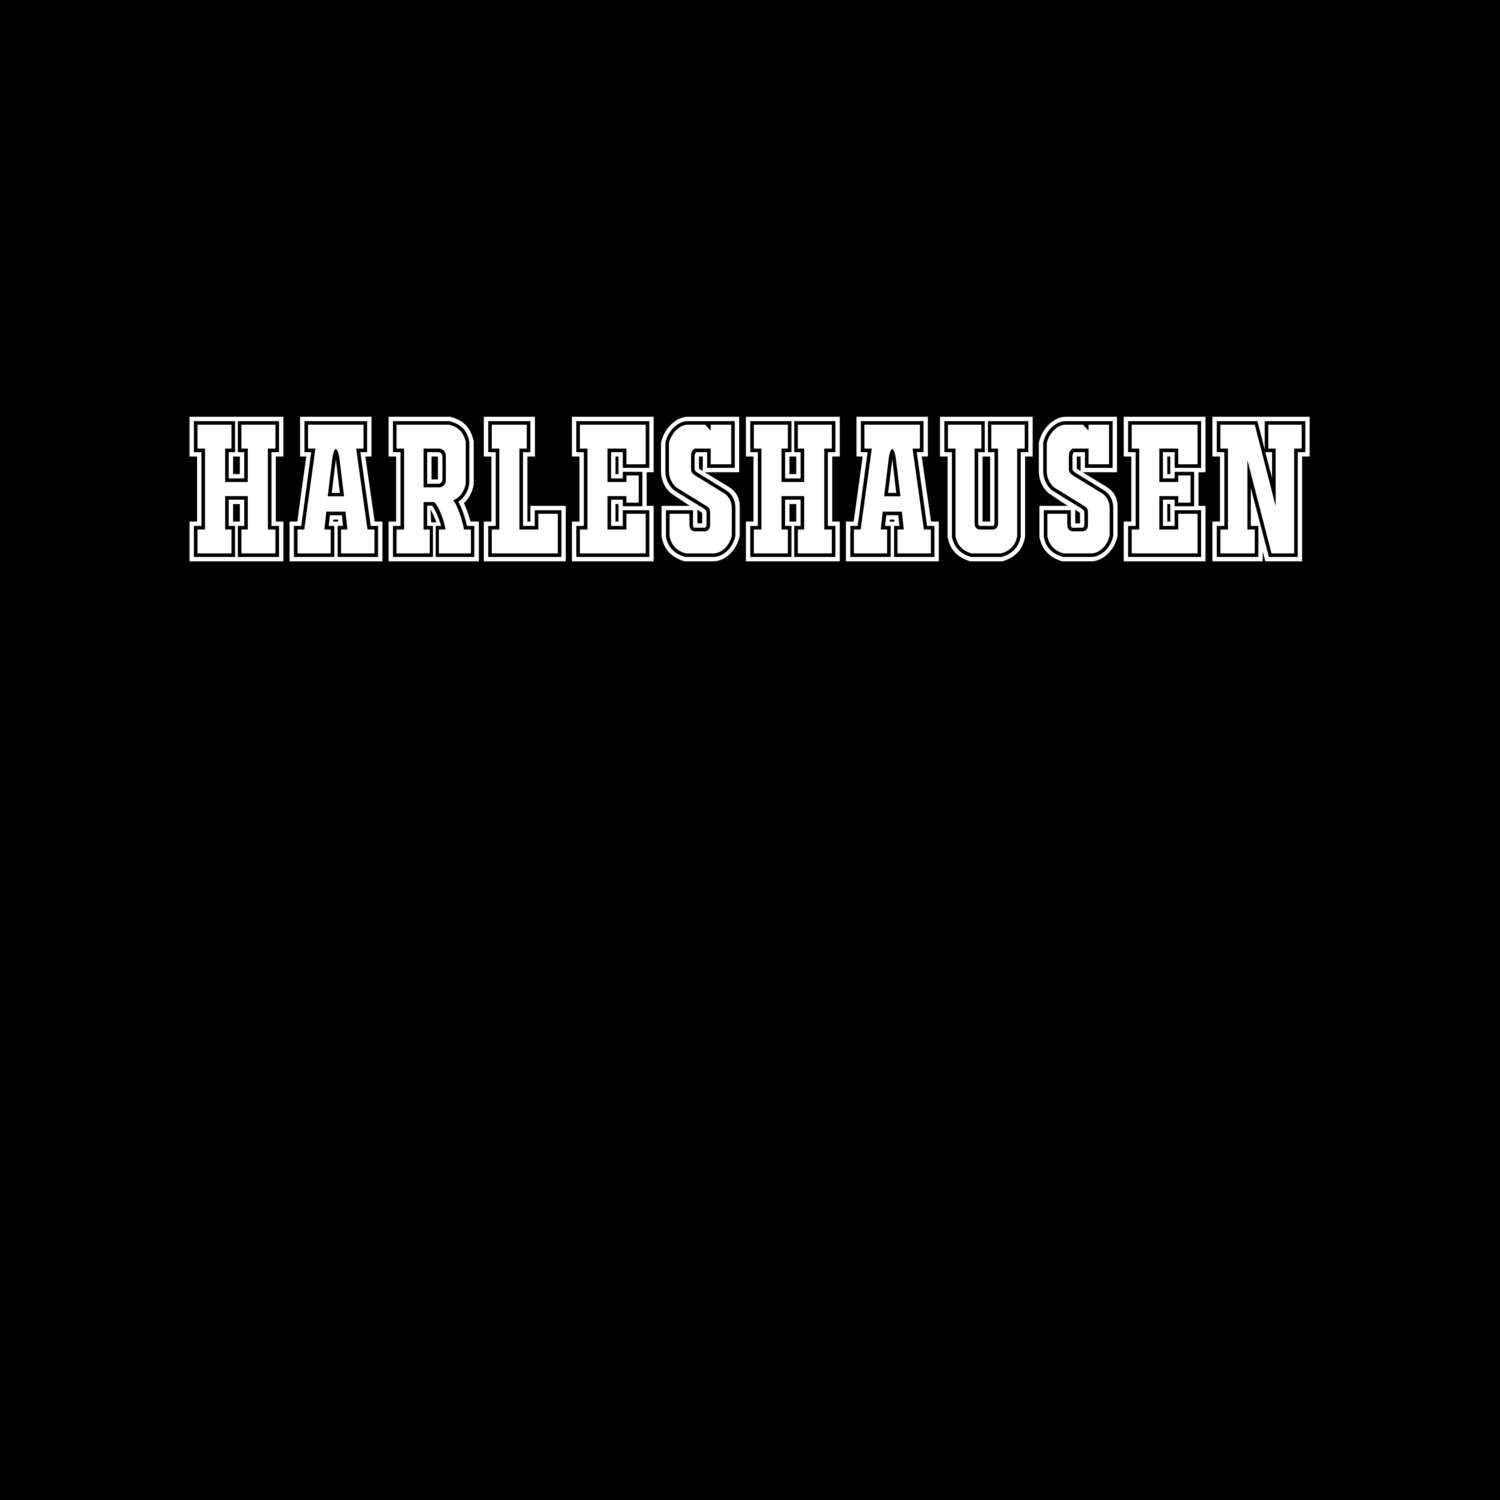 Harleshausen T-Shirt »Classic«